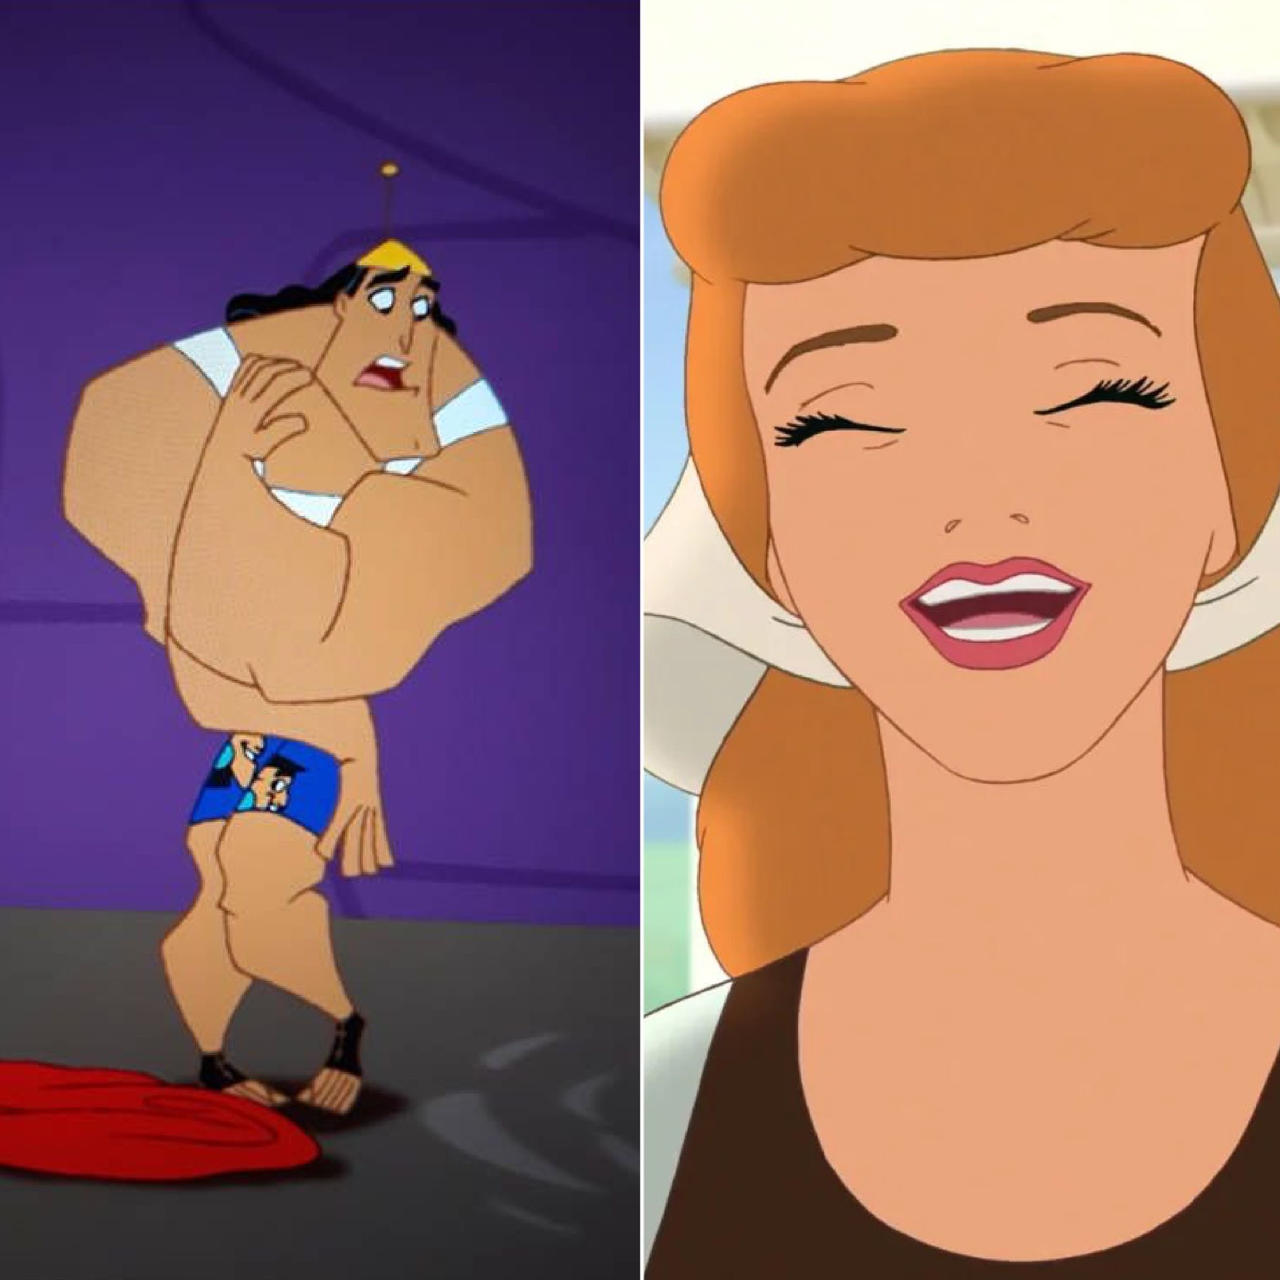 Cinderella laughs at Kronk in underwear by Disneywo on DeviantArt